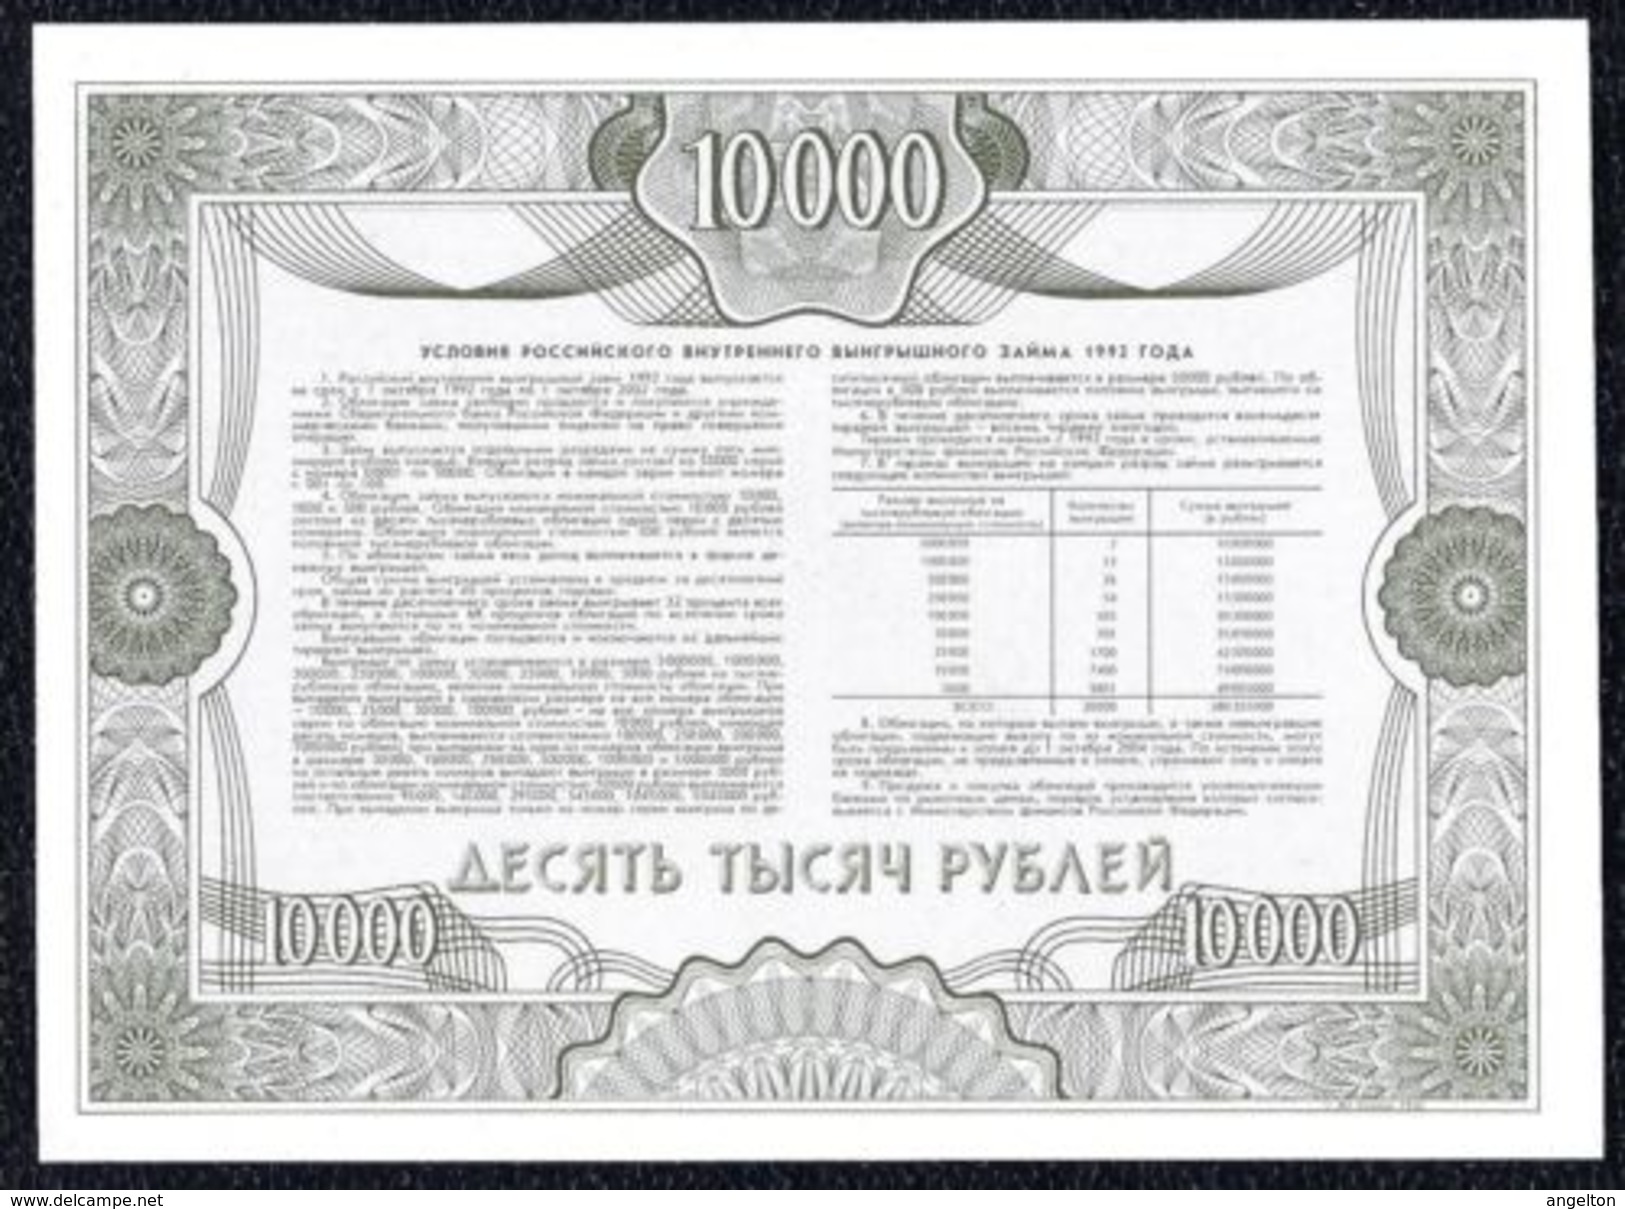 Russia - 10000 Rubles 1992 Government Loan Specimen UNC Note! - Russia